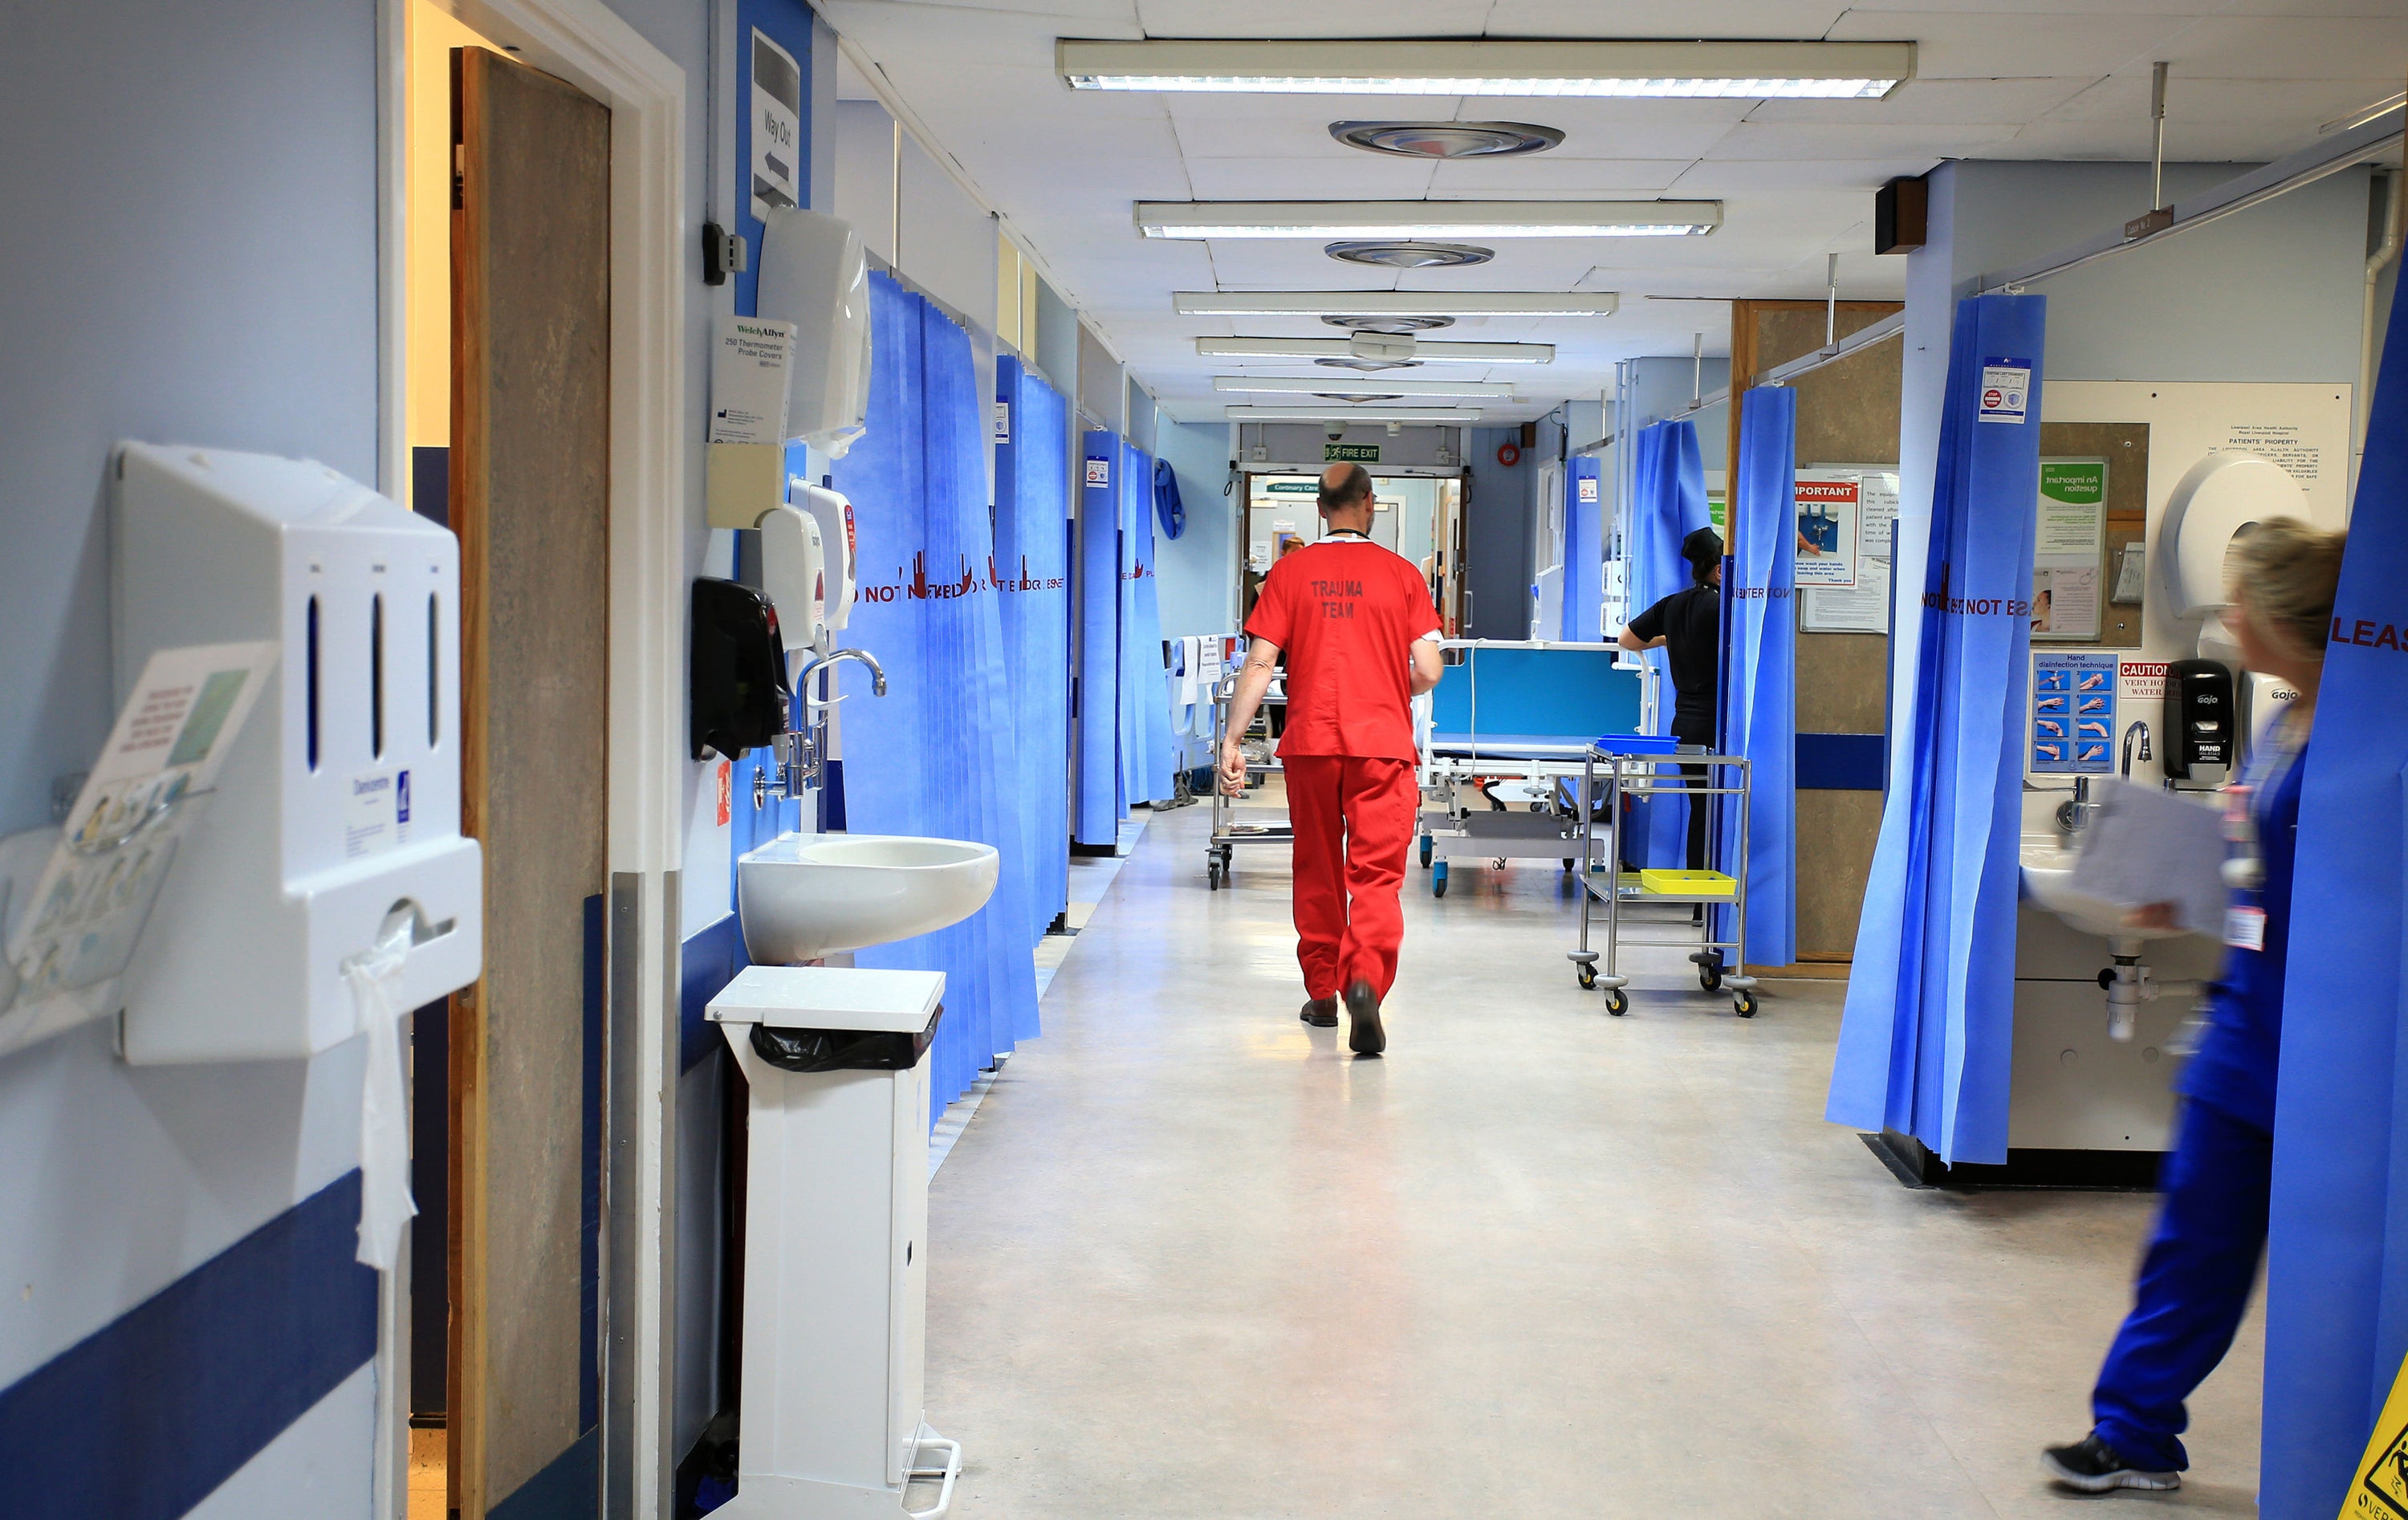 El aumento de covid-19 sigue acumulando presión sobre el NHS (Servicio Nacional de Salud del Reino Unido)